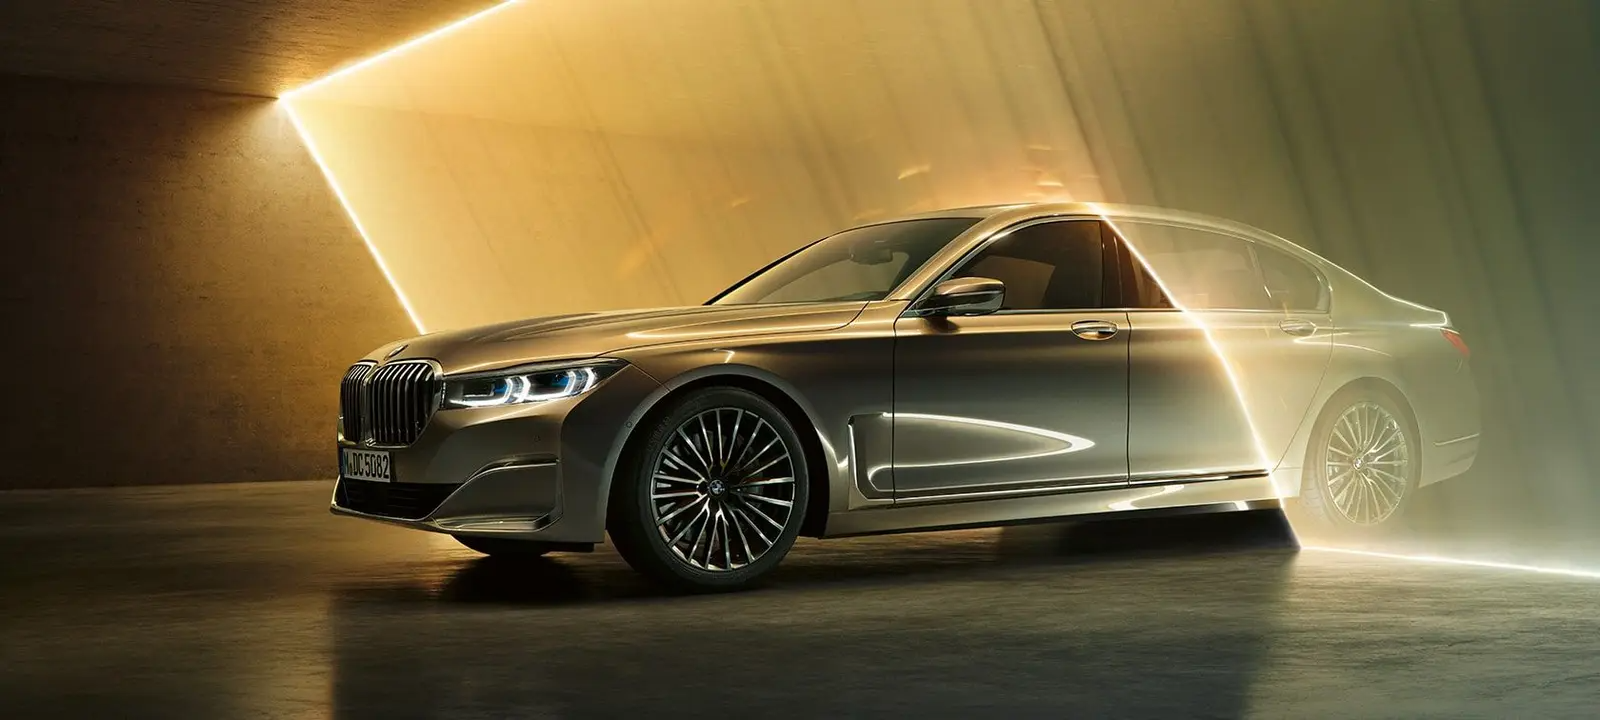 Đánh giá xe BMW 4 Series Cảm giác lái THỂ THAO nhưng vẫn chưa thực sự hấp  dẫn